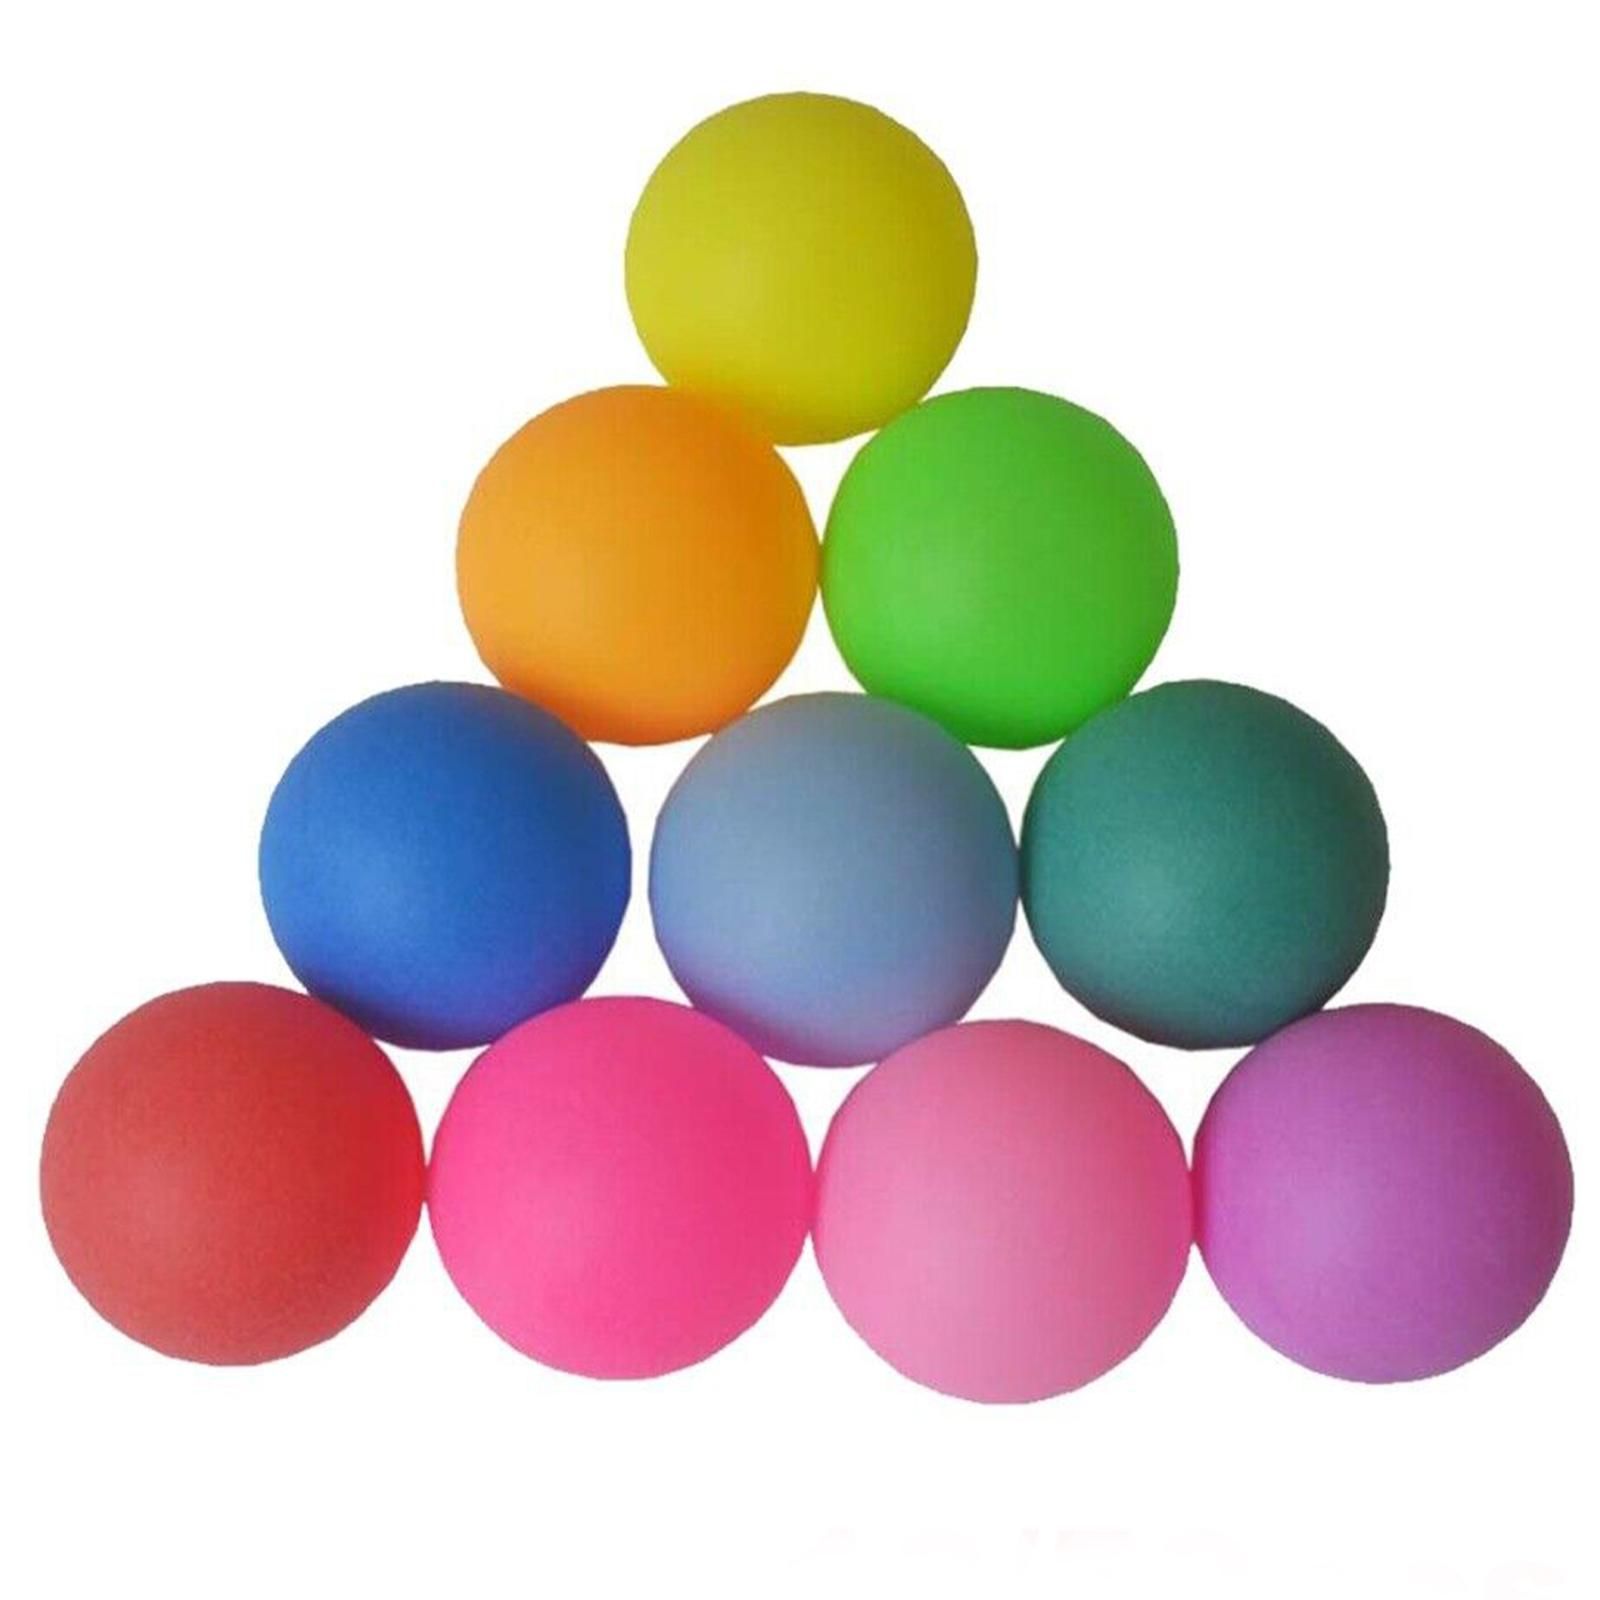 Balls rng. Мячики д/пинг-понга (6 шт.) PPB-6b, материал: полипропилен, BL 323118. Мяч настольный теннис 40 мм. Разноцветные мячики. Мяч для пинг понга цветной.